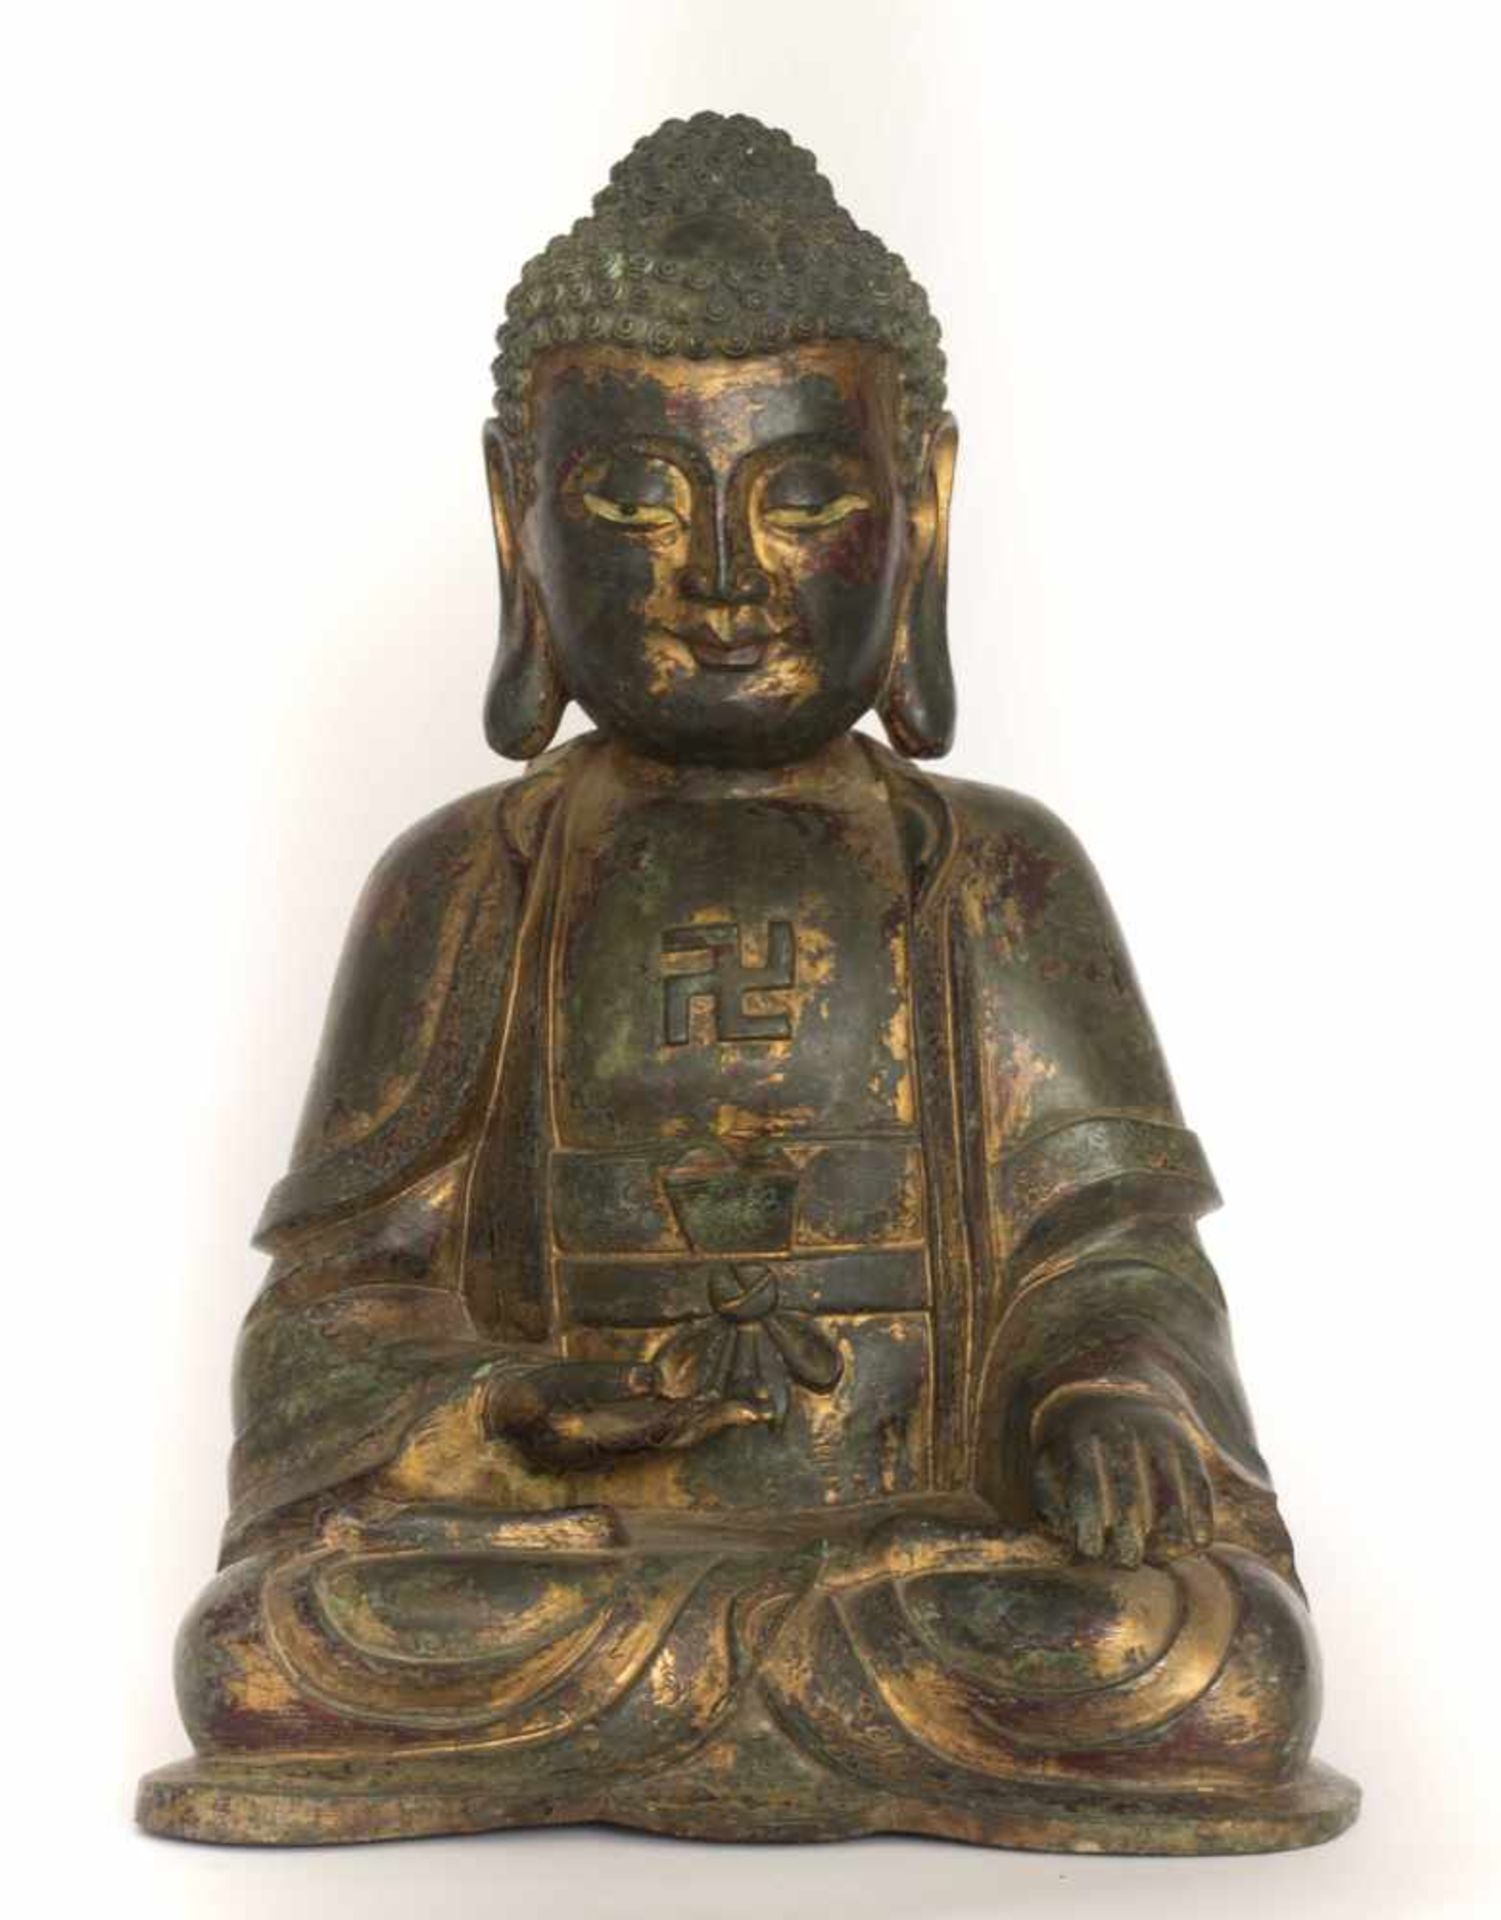 Große Bronze des Buddha Shakyamuni China 18./19. Jhd.mit Resten alter Vergoldung und Fassung,